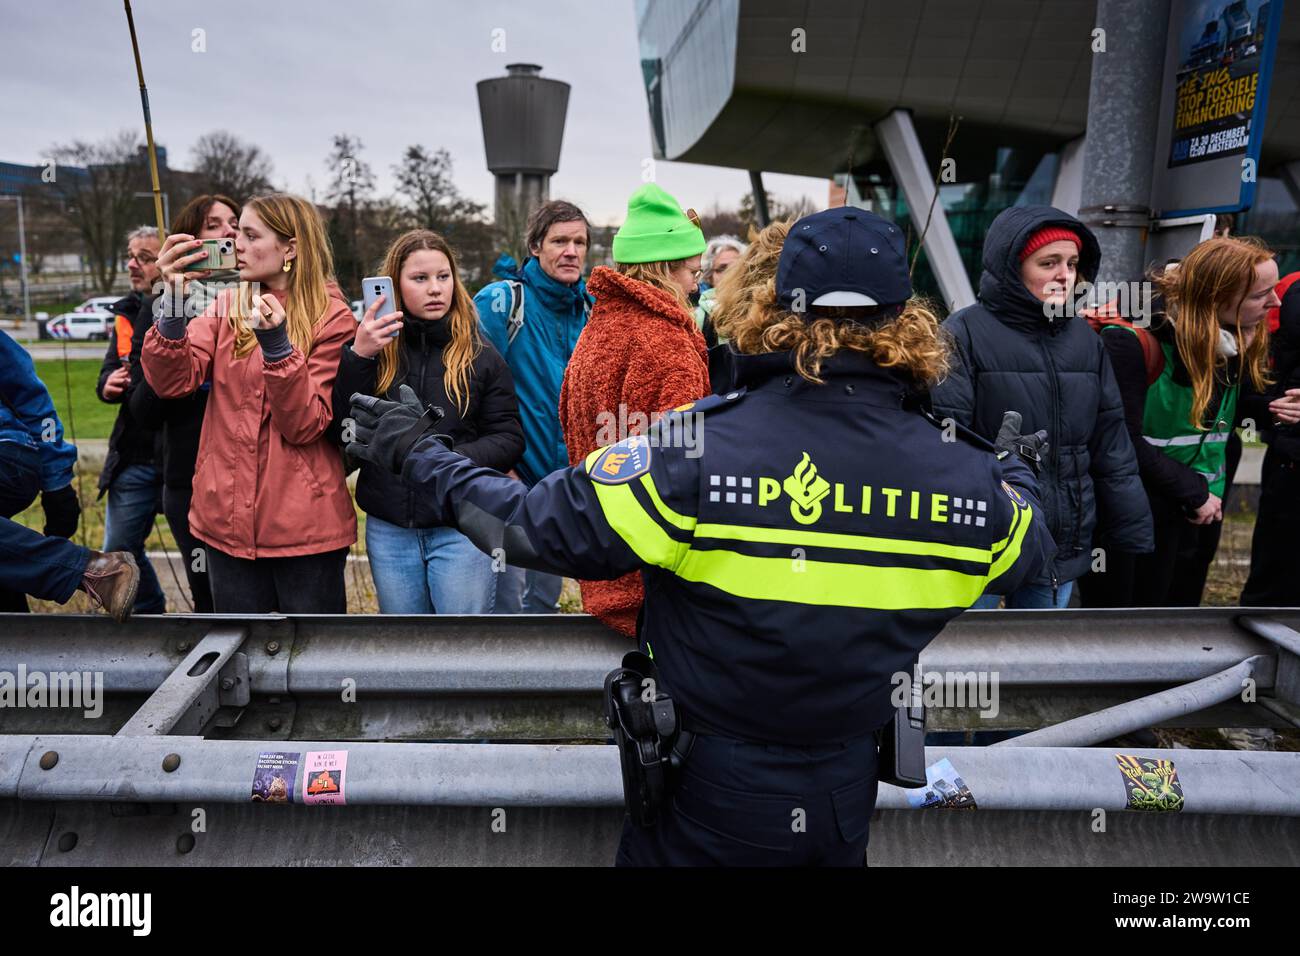 AMSTERDAM - Demonstranten der Extinction Rebellion während einer Blockade der Autobahn A10 am ehemaligen Hauptsitz der ING auf der Zuidas. Sie fordern von der Bank, alle Finanzierungen und Dienstleistungen für die fossile Industrie einzustellen. ANP PHIL NIJHUIS niederlande raus - belgien raus Stockfoto